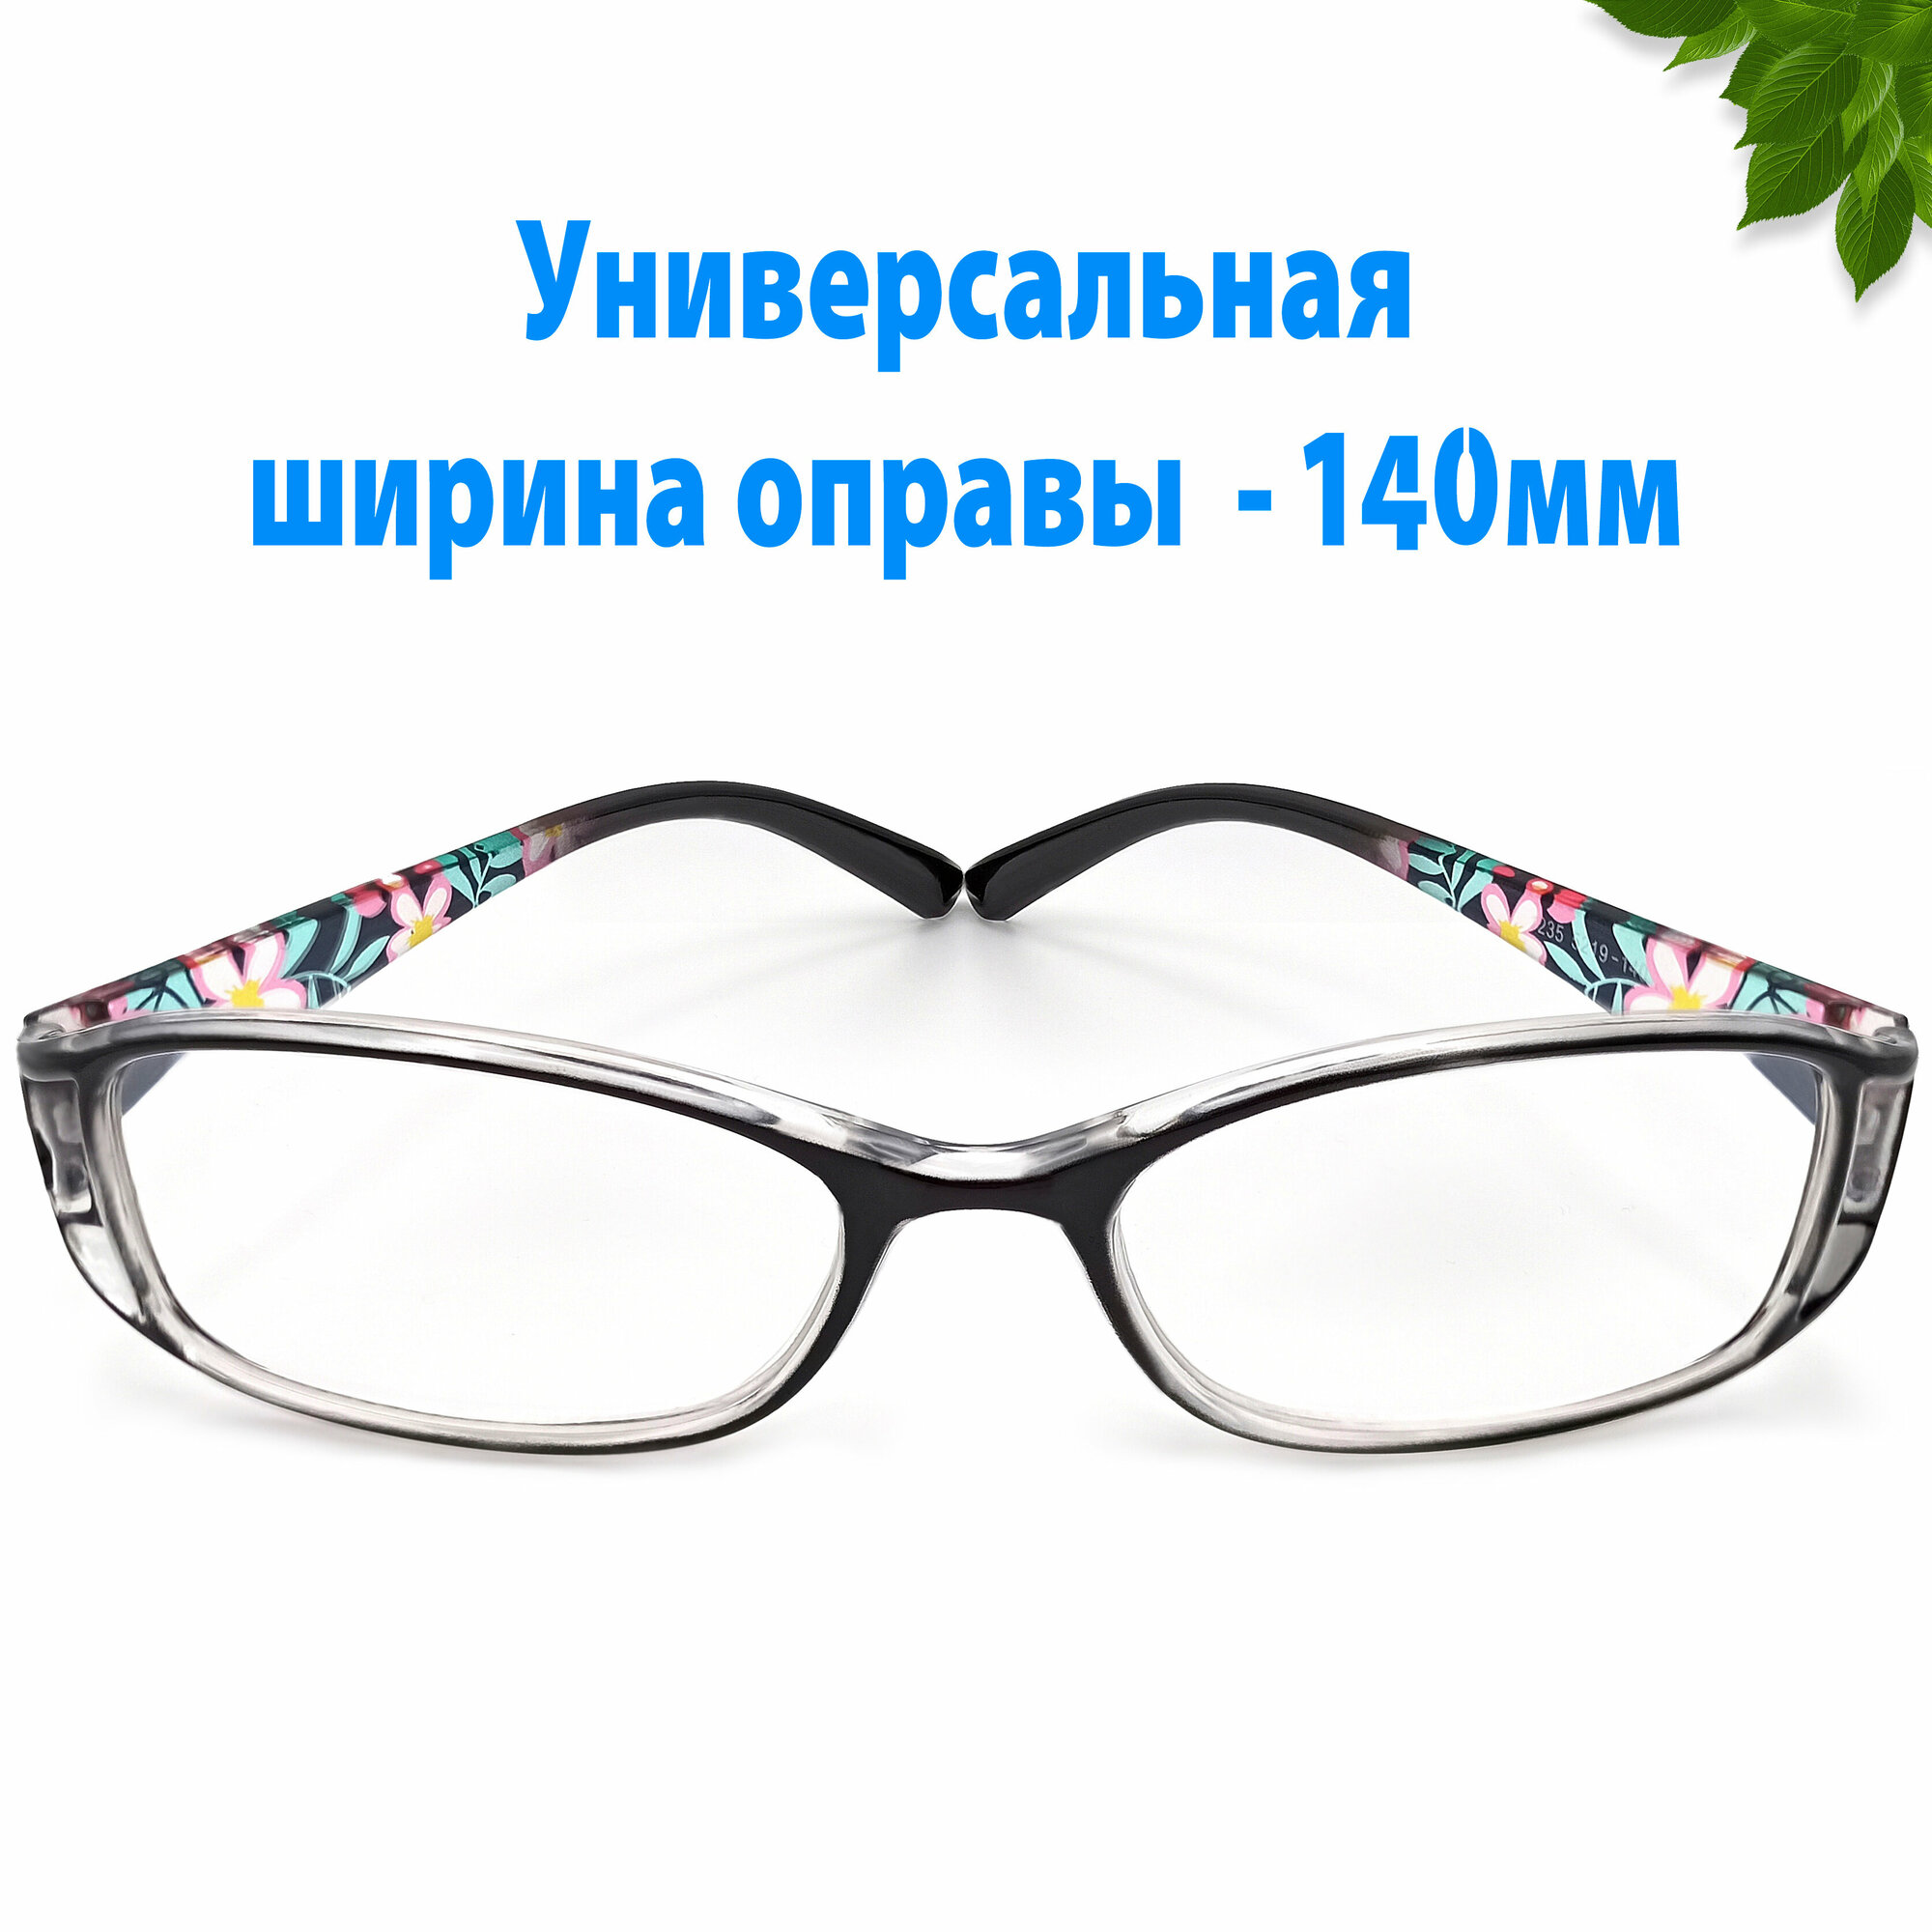 Готовые очки для зрения +2.50 женские в черной оправе дужка с рисунком